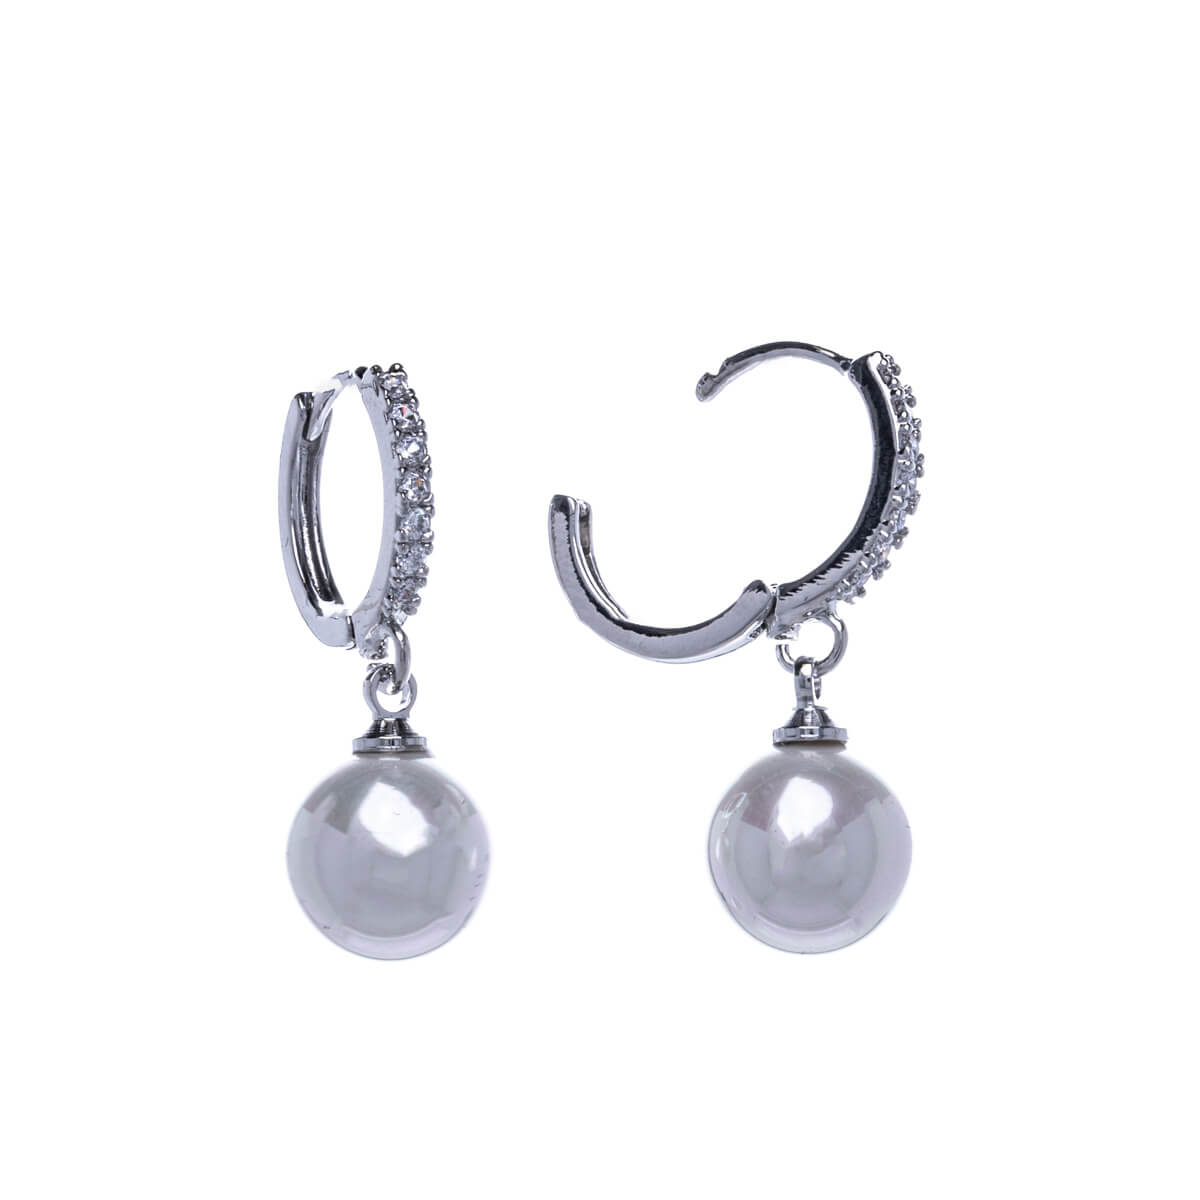 Dangling pearl earrings with zirconia earrings (10mm)